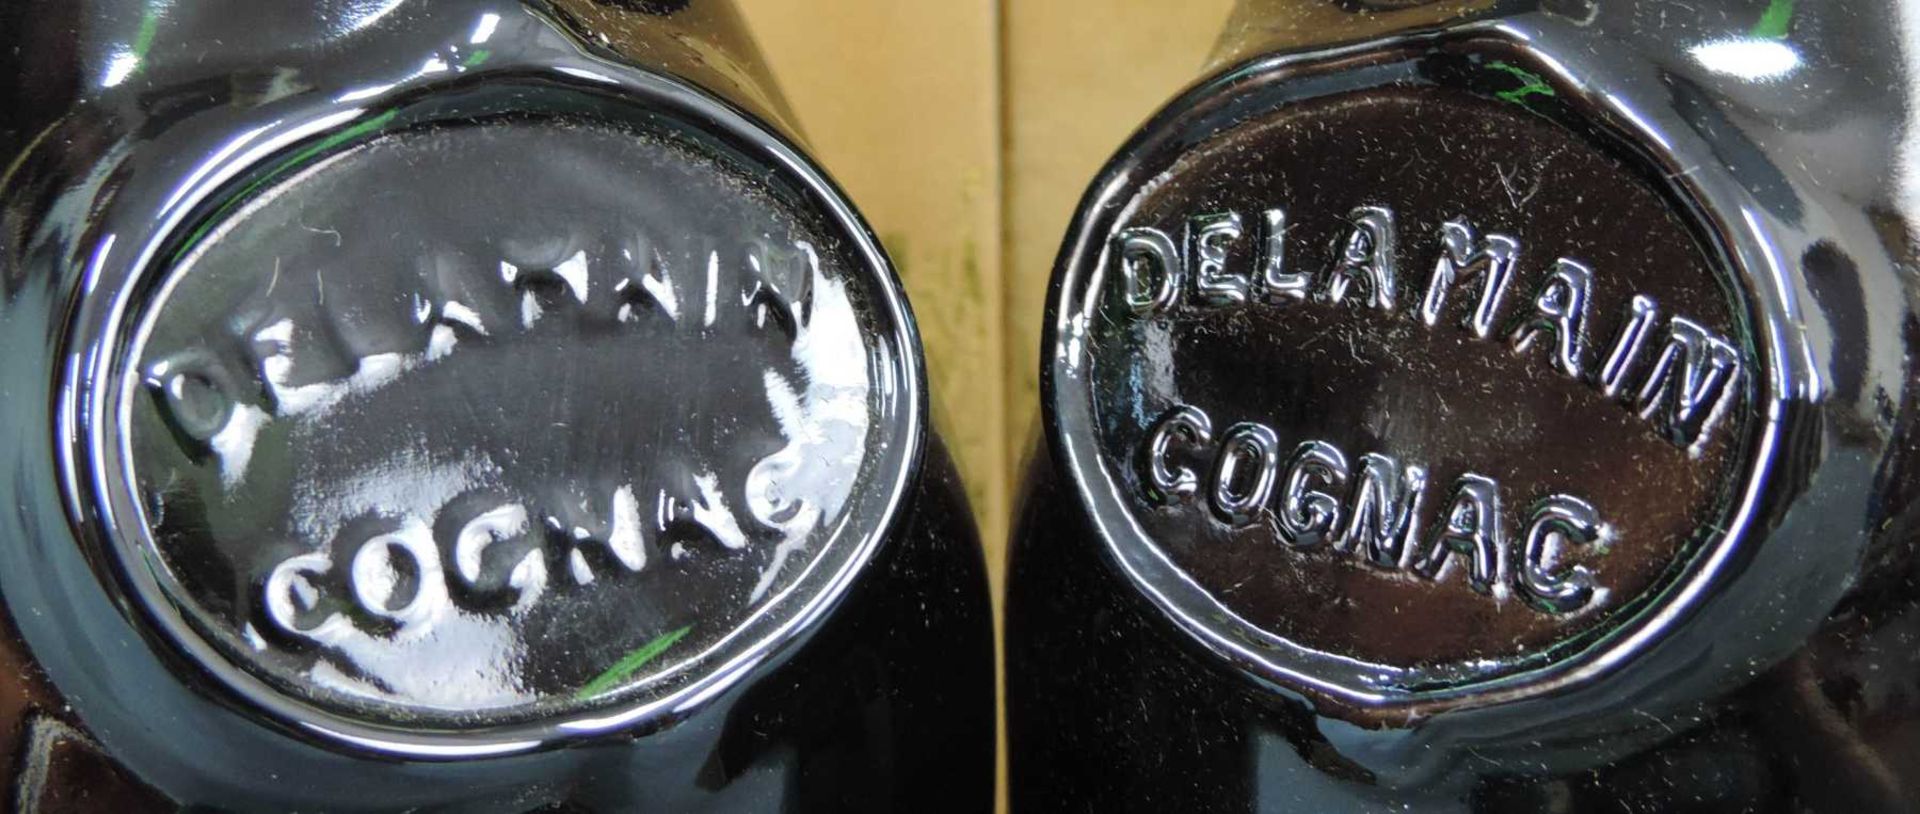 2 Flaschen Delamain Grande Champagne Très Vieilles Cognac, France. 70cl. 40%. In original Kartons. 2 - Bild 4 aus 8